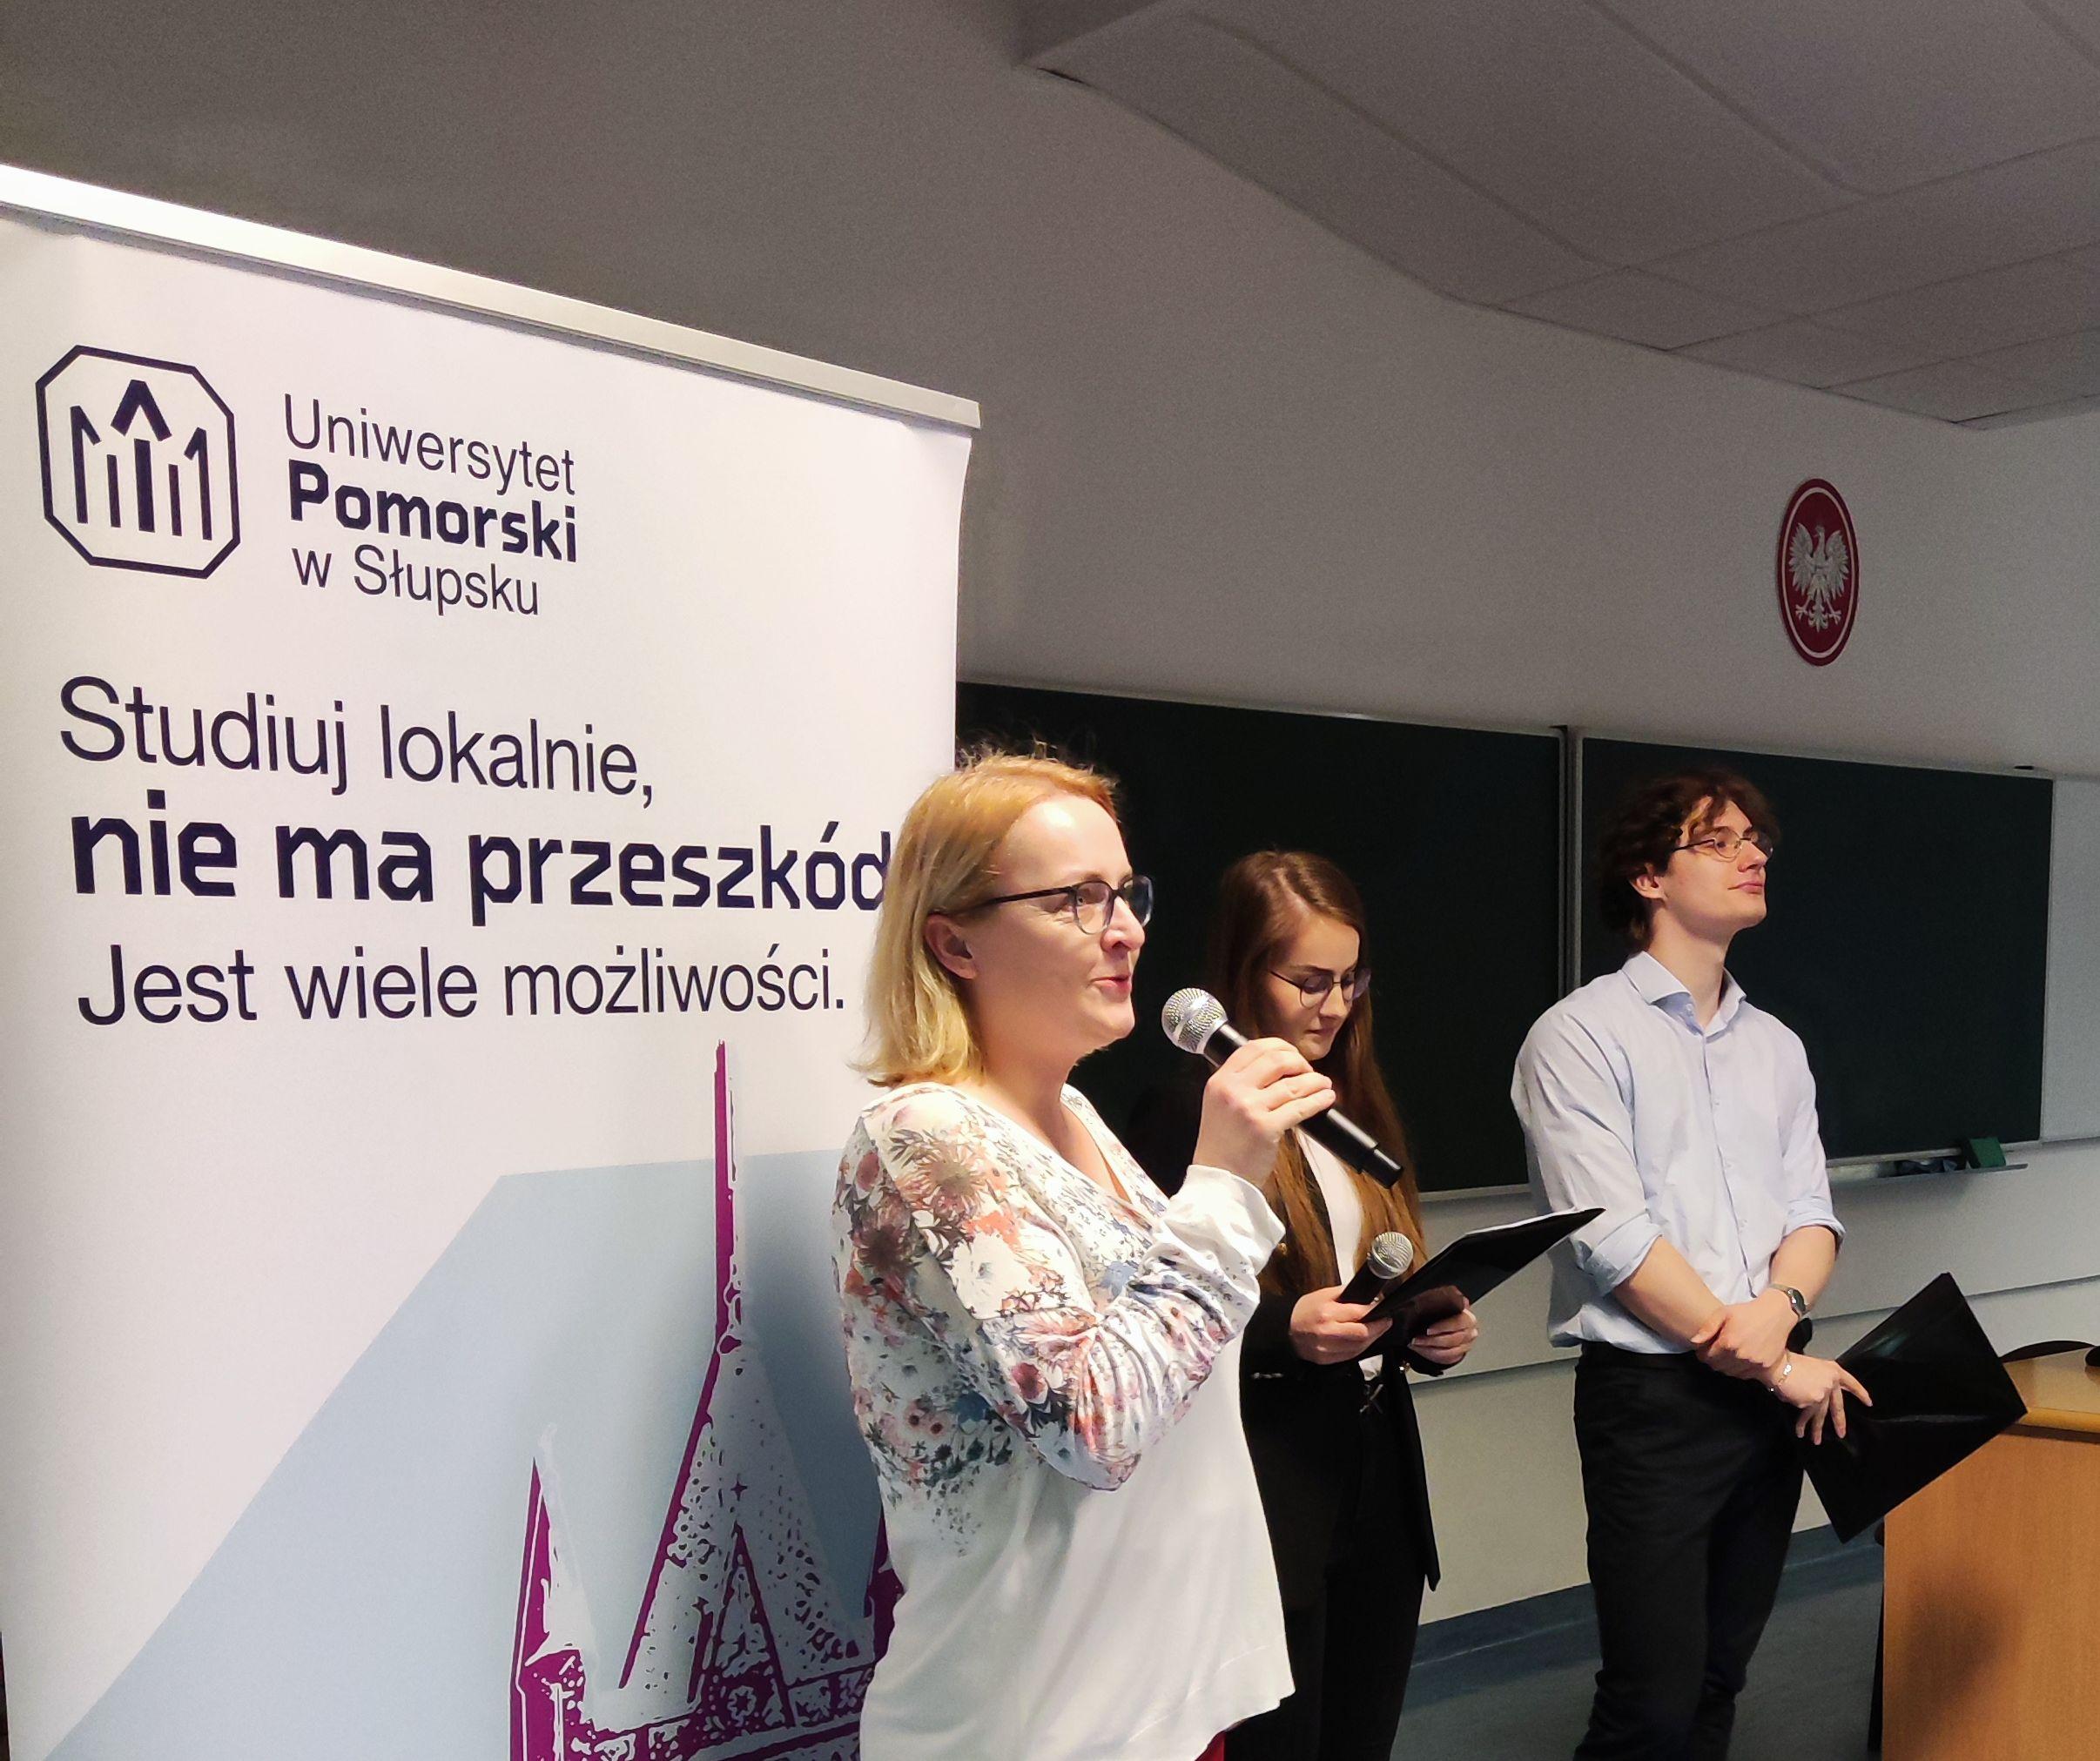 Pierwsza międzynarodowa studencka konferencja w Katedrze Filologii Angielskiej Uniwersytetu Pomorskiego w Słupsku!